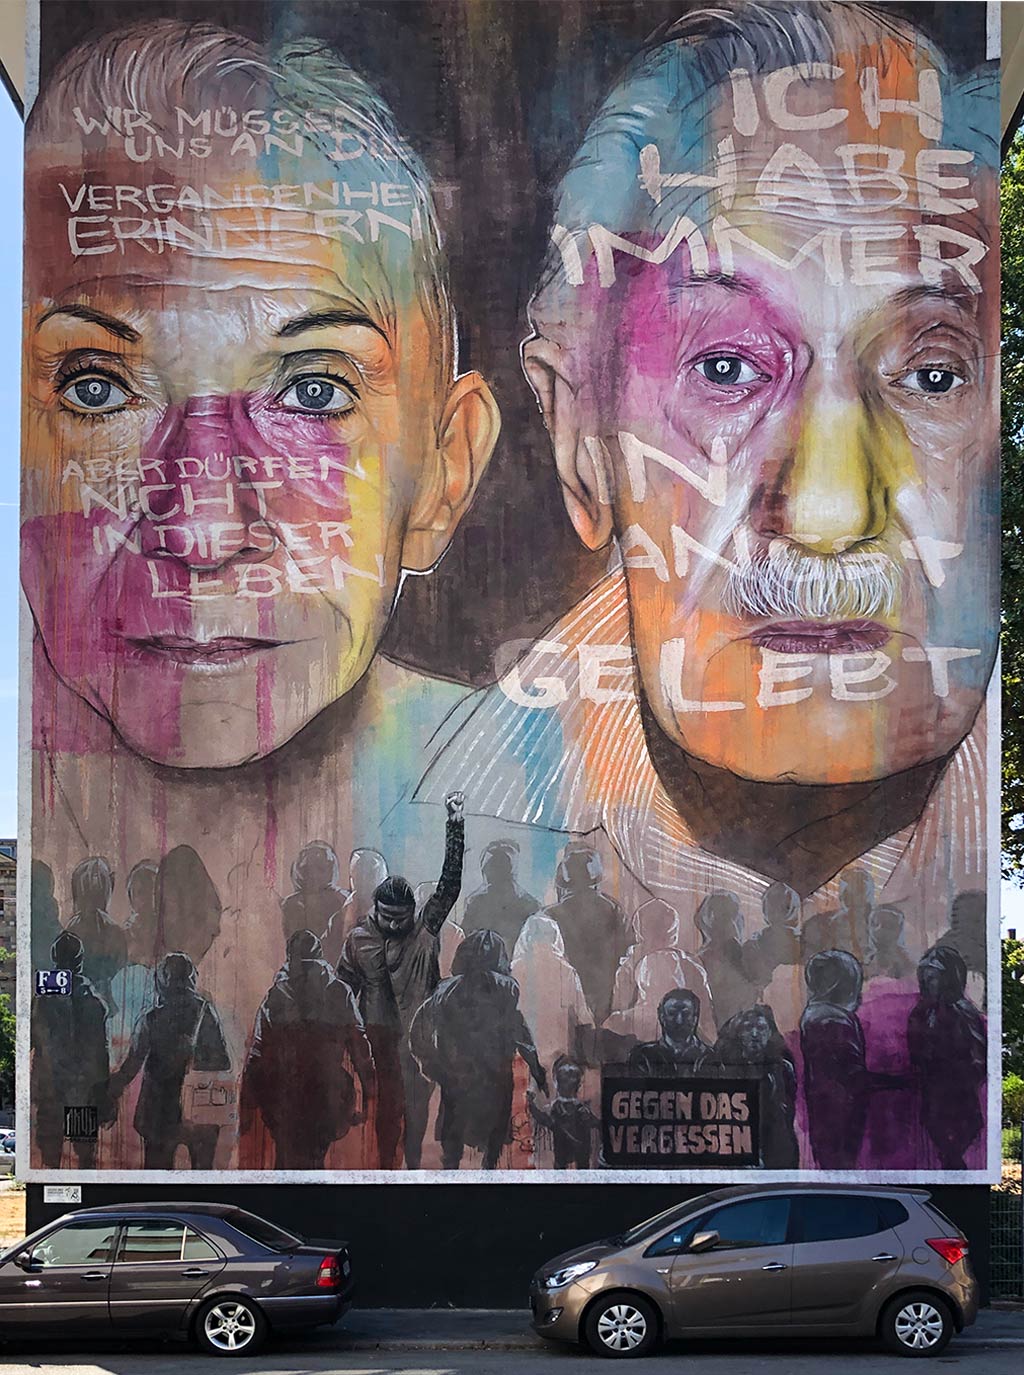 Mural in Mannheim von Akut: Gegen das Vergessen